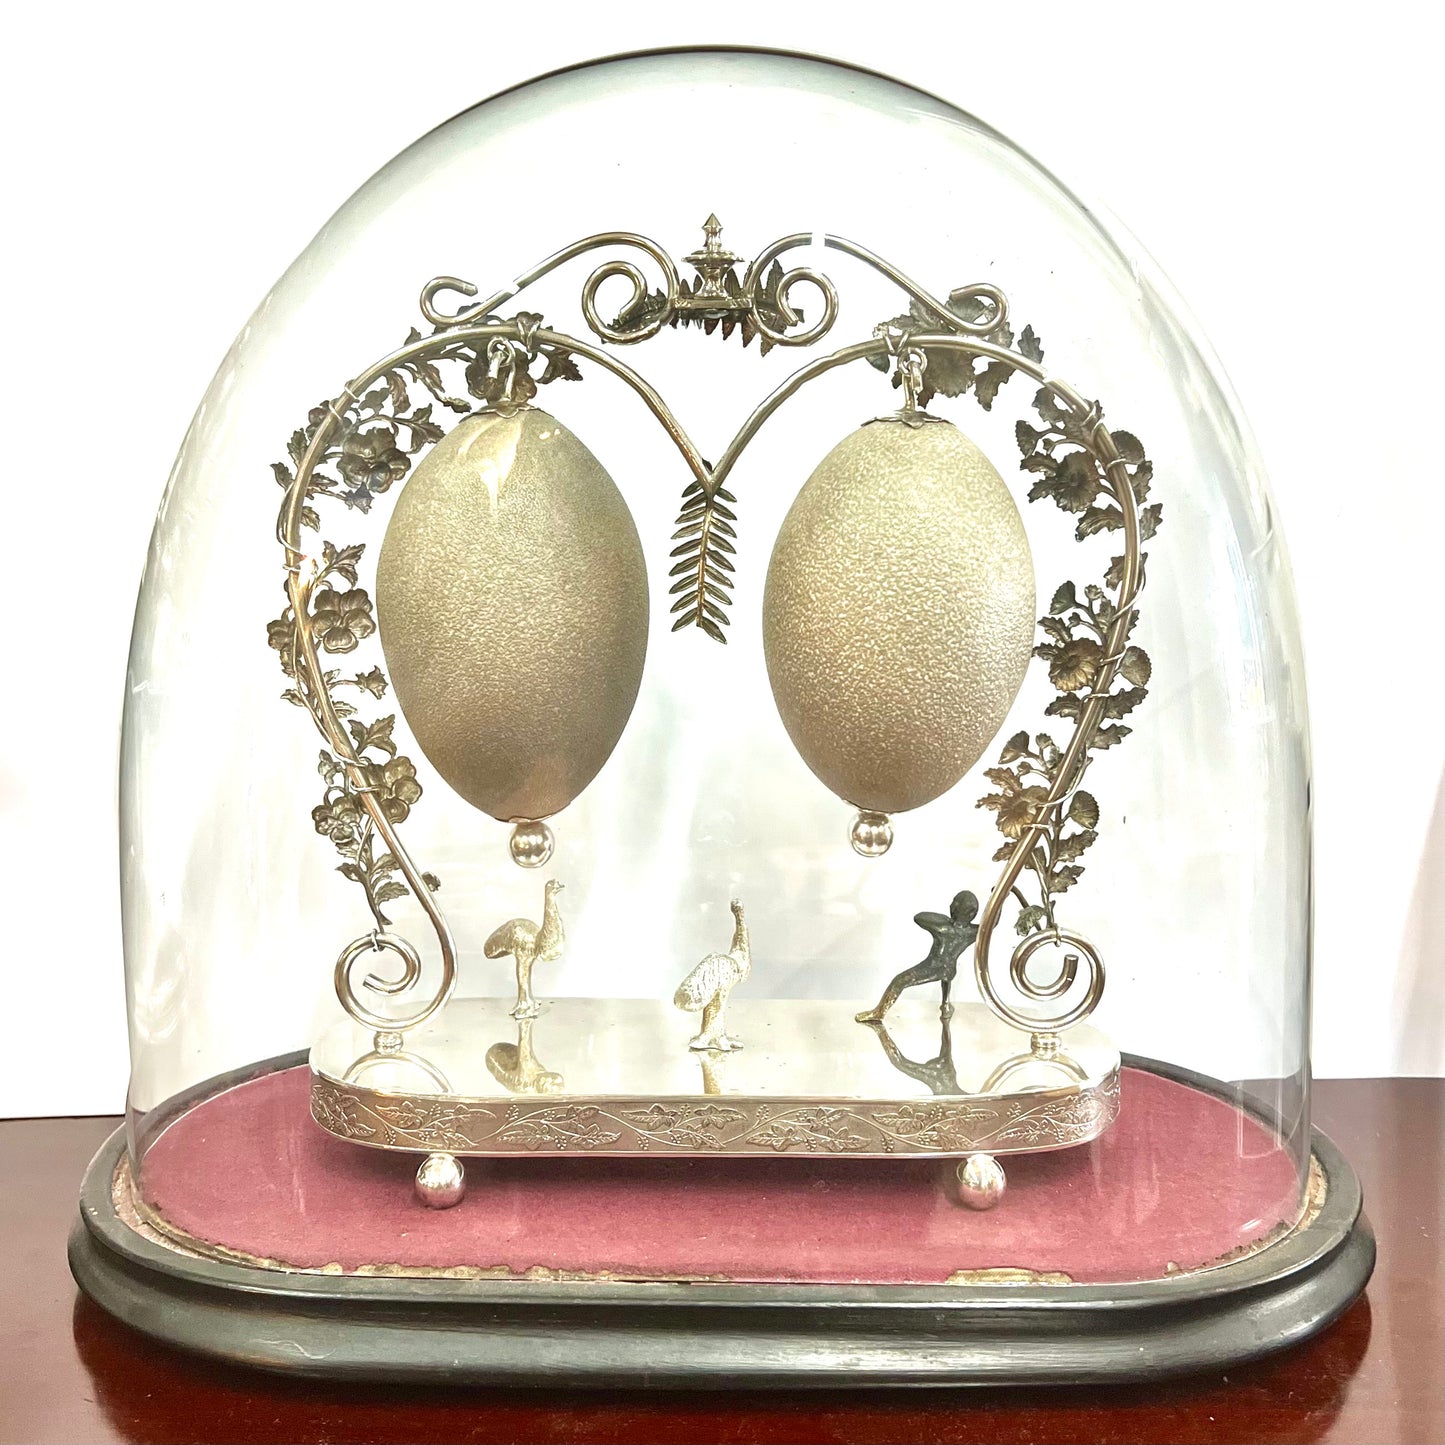 精美的 19 世纪晚期澳大利亚早期镀银中心装饰品，带有双镶嵌和雕刻的鸸鹋蛋